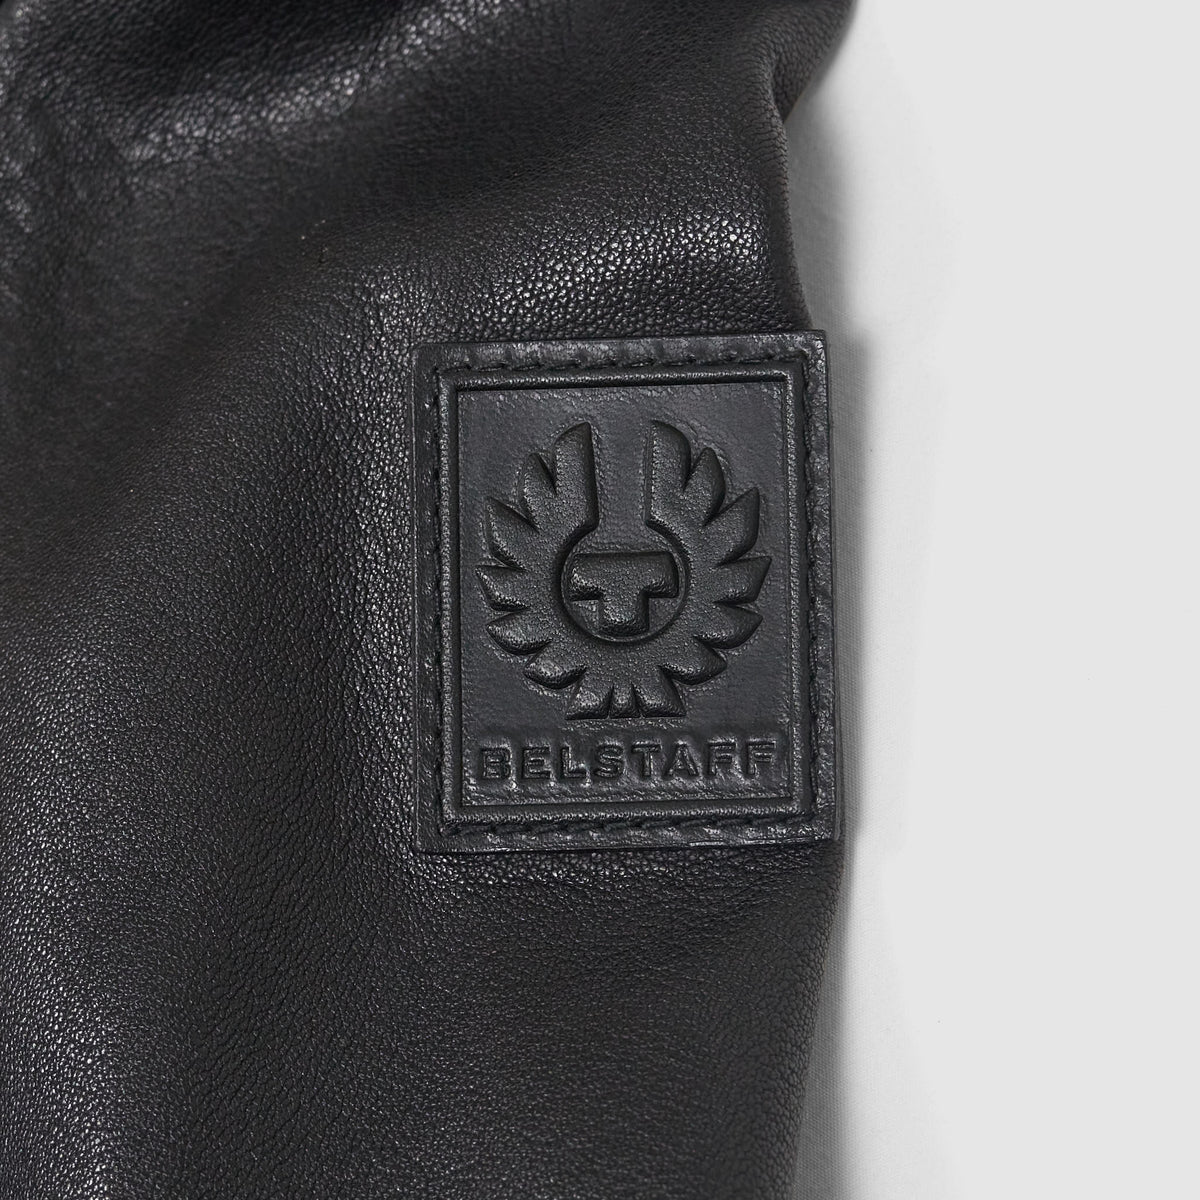 Belstaff V-Racer Leather Jackets